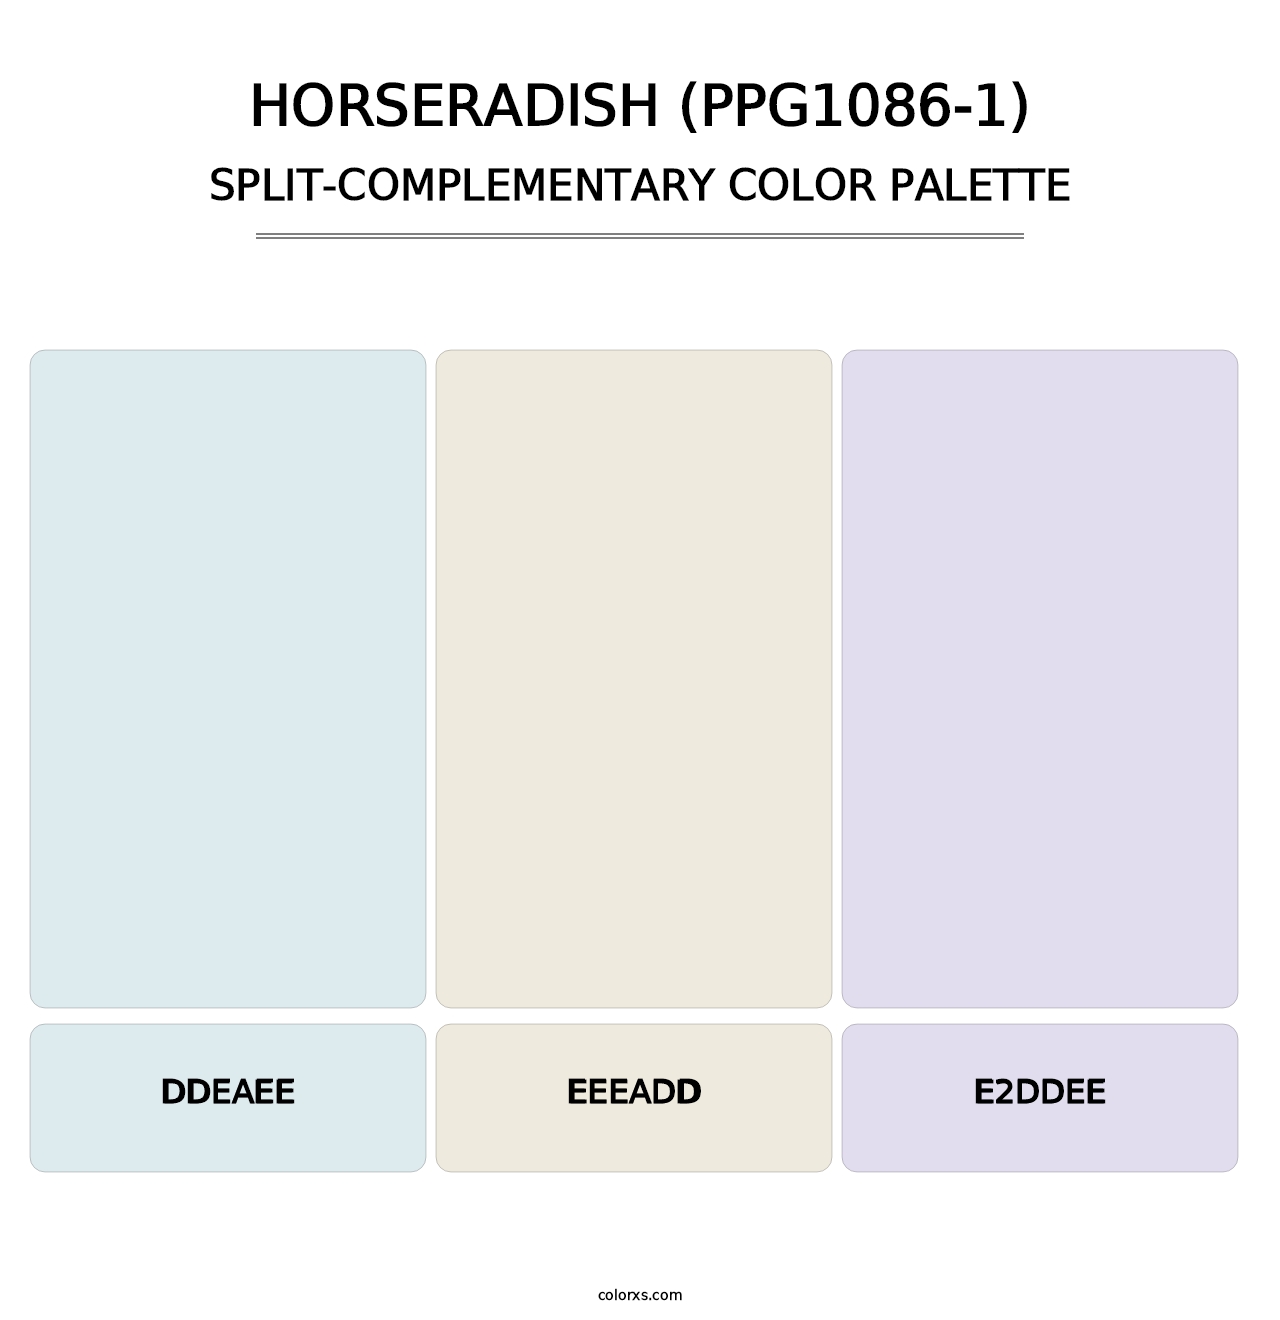 Horseradish (PPG1086-1) - Split-Complementary Color Palette